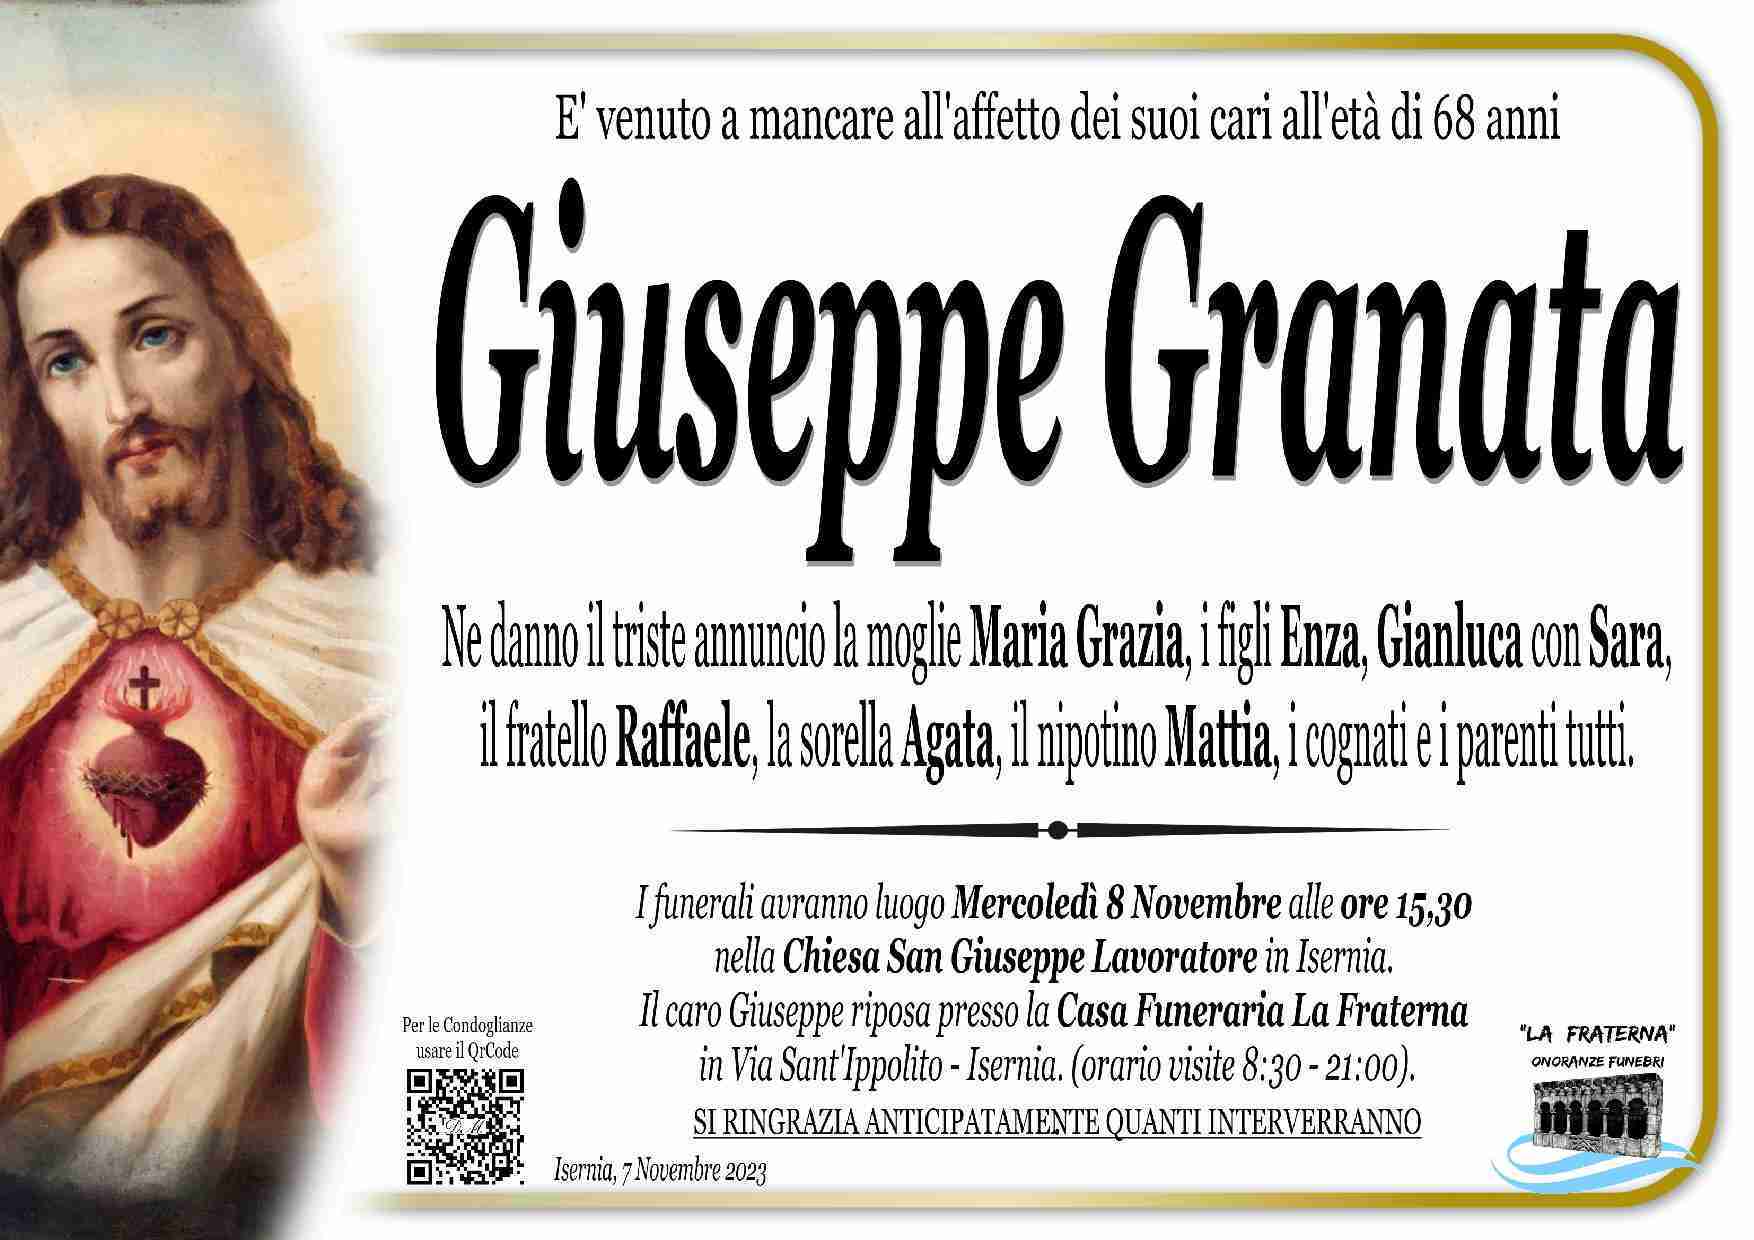 Giuseppe Granata